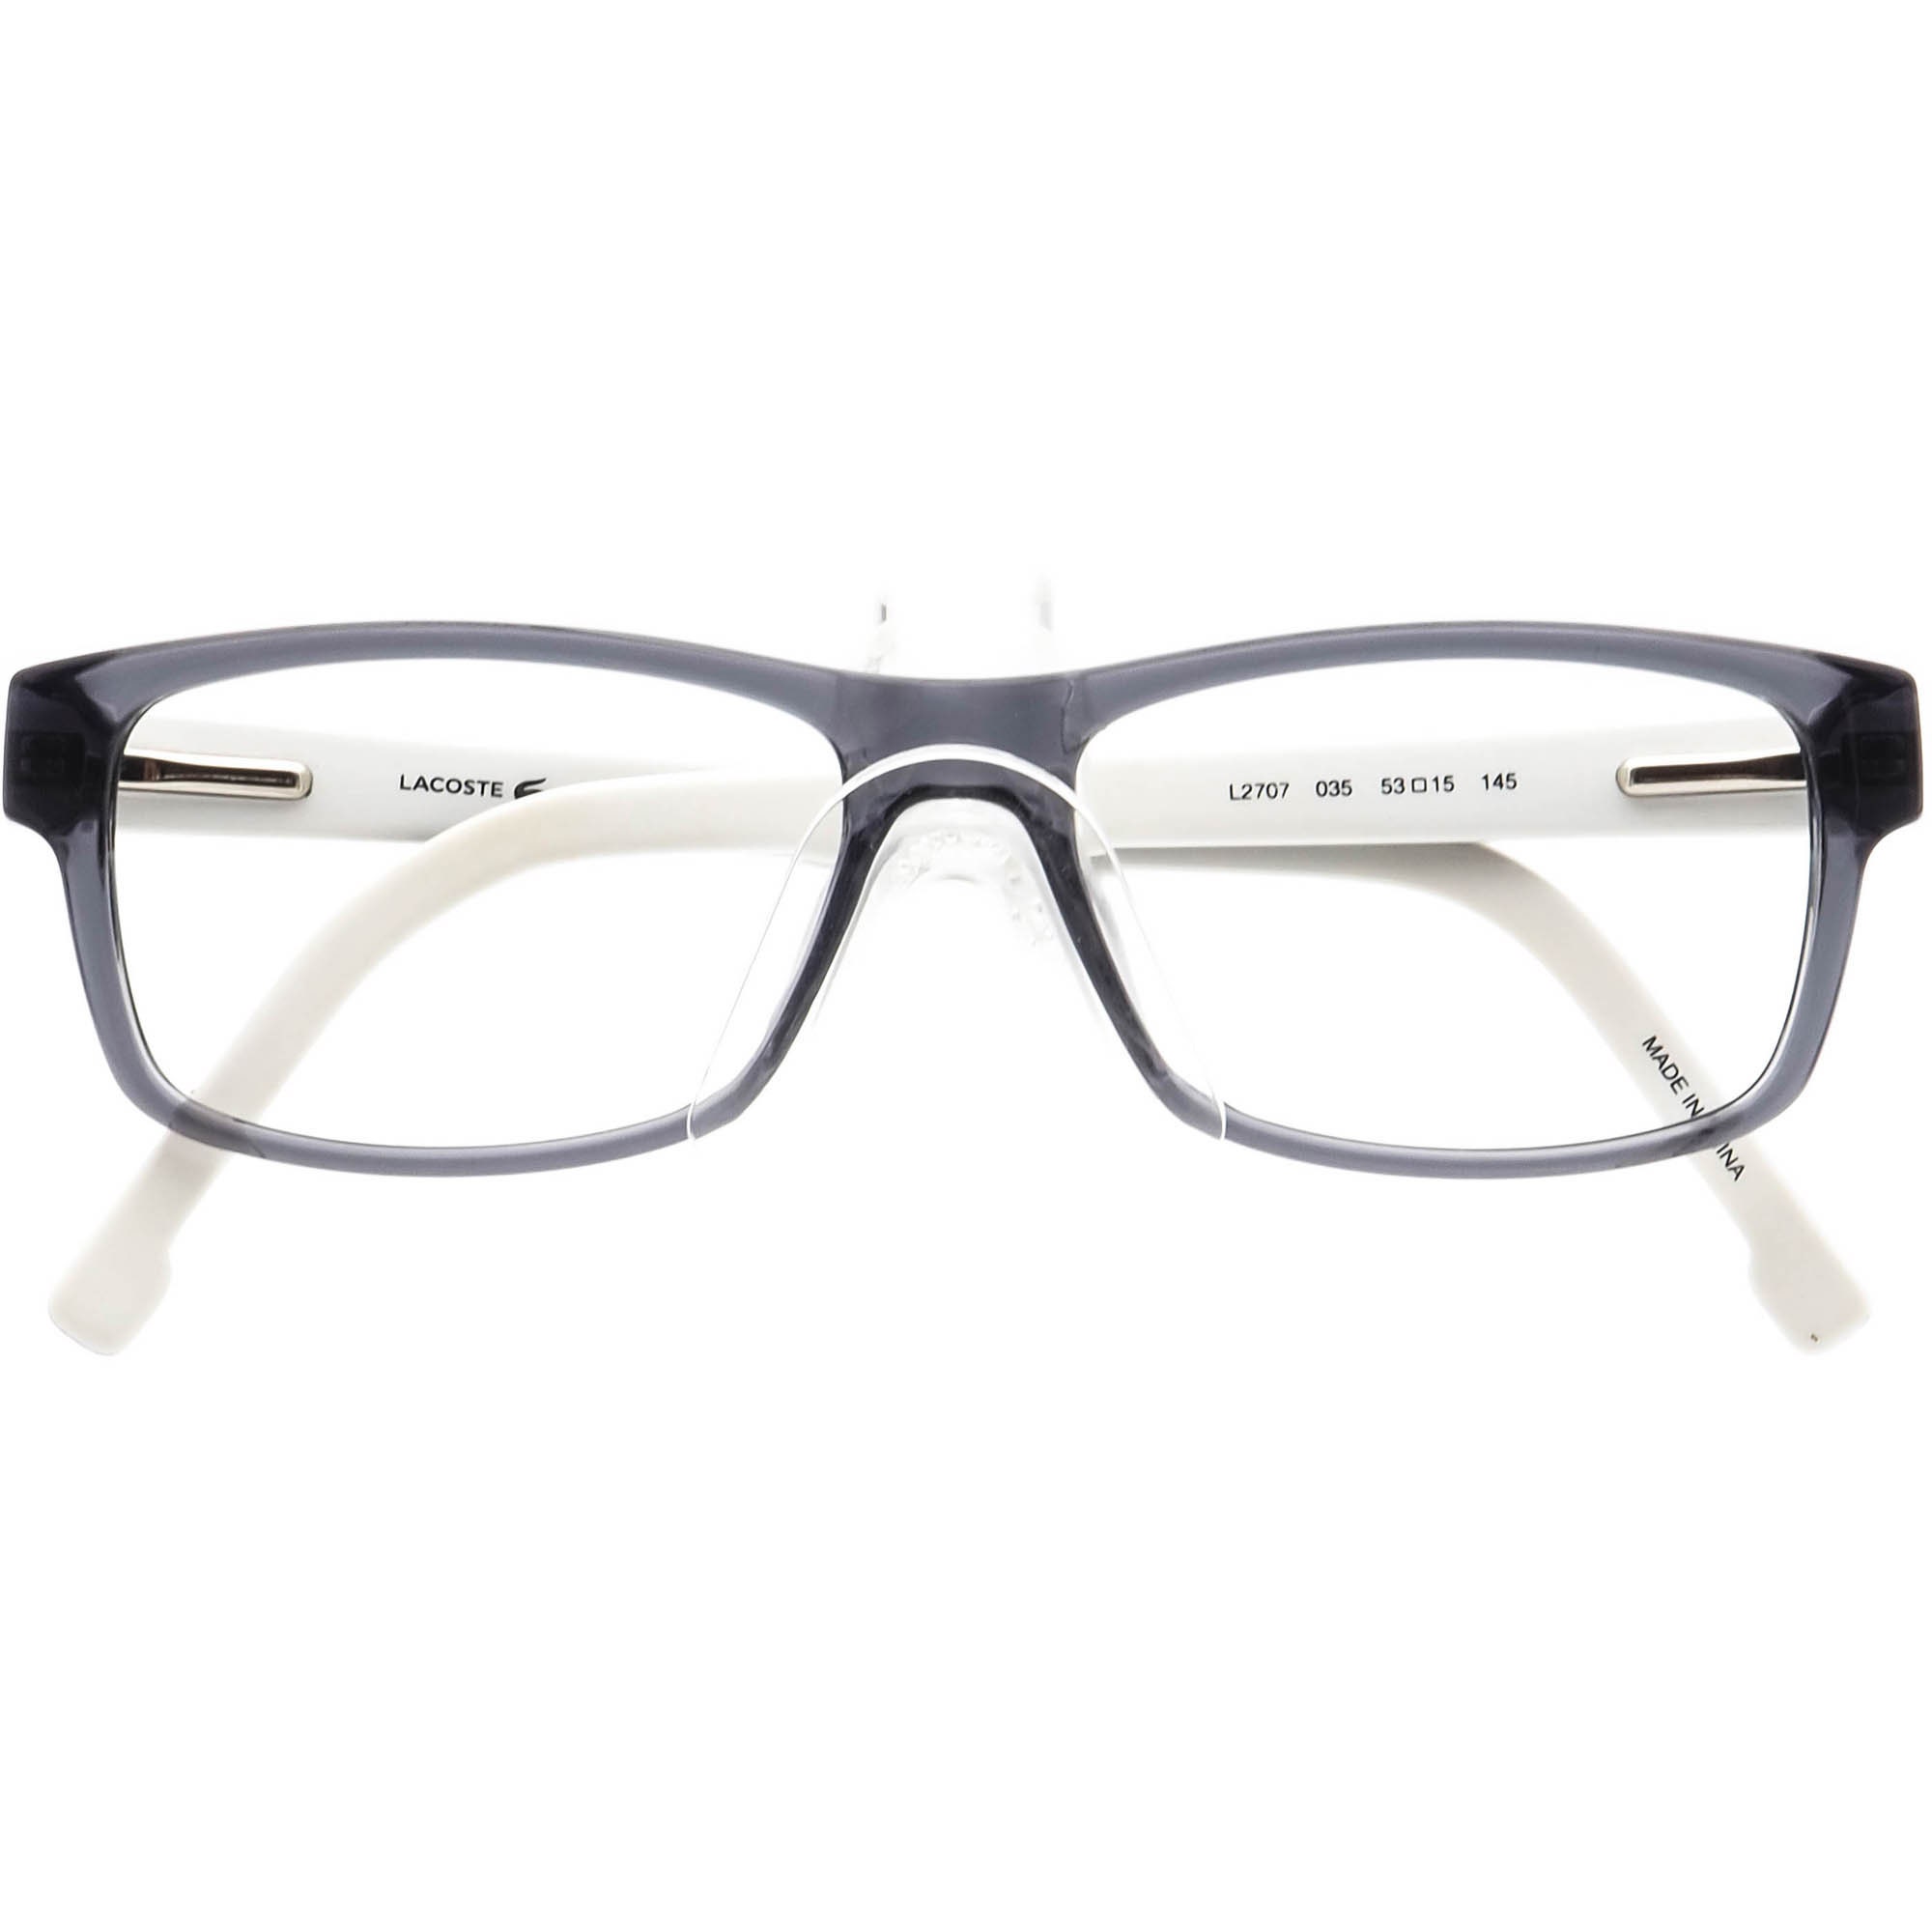 Lacoste Eyeglasses L2707 035 Smokey Gray/black on White - Etsy